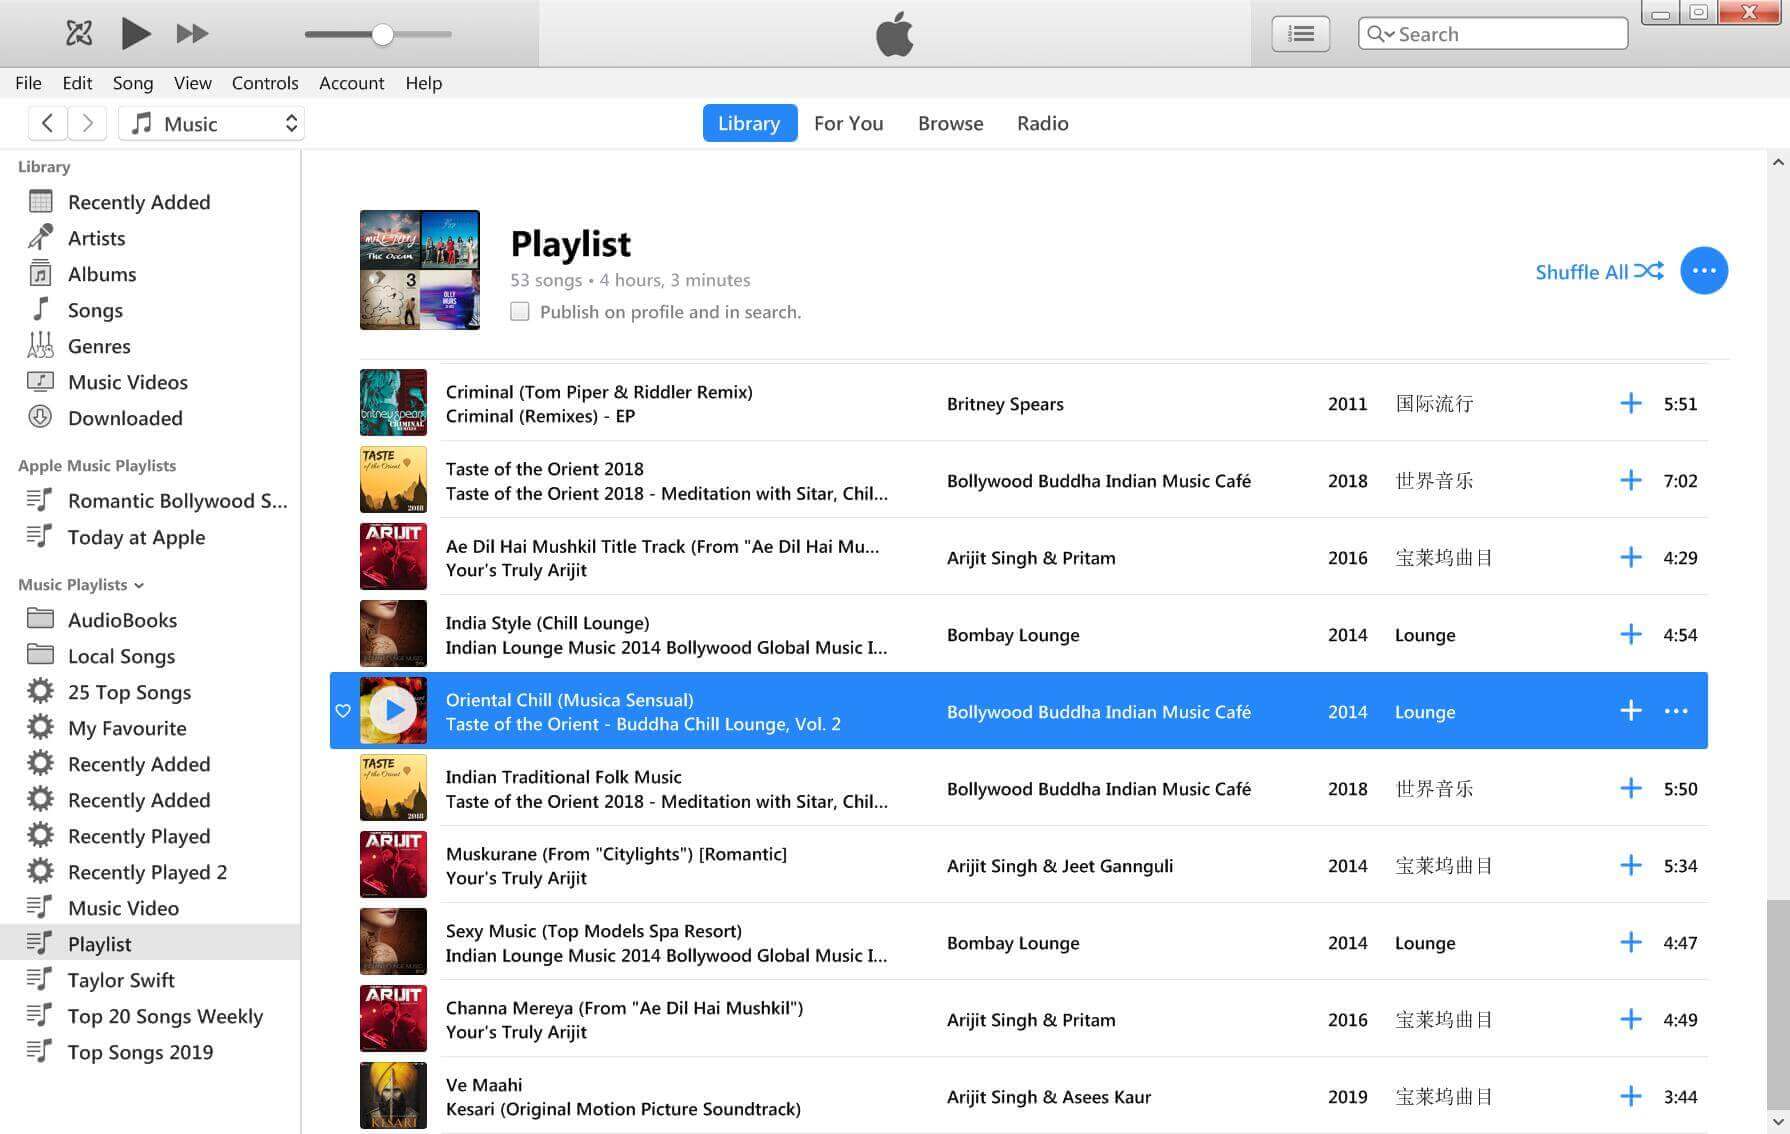 τραγούδια μουσικής apple στη βιβλιοθήκη του iTunes